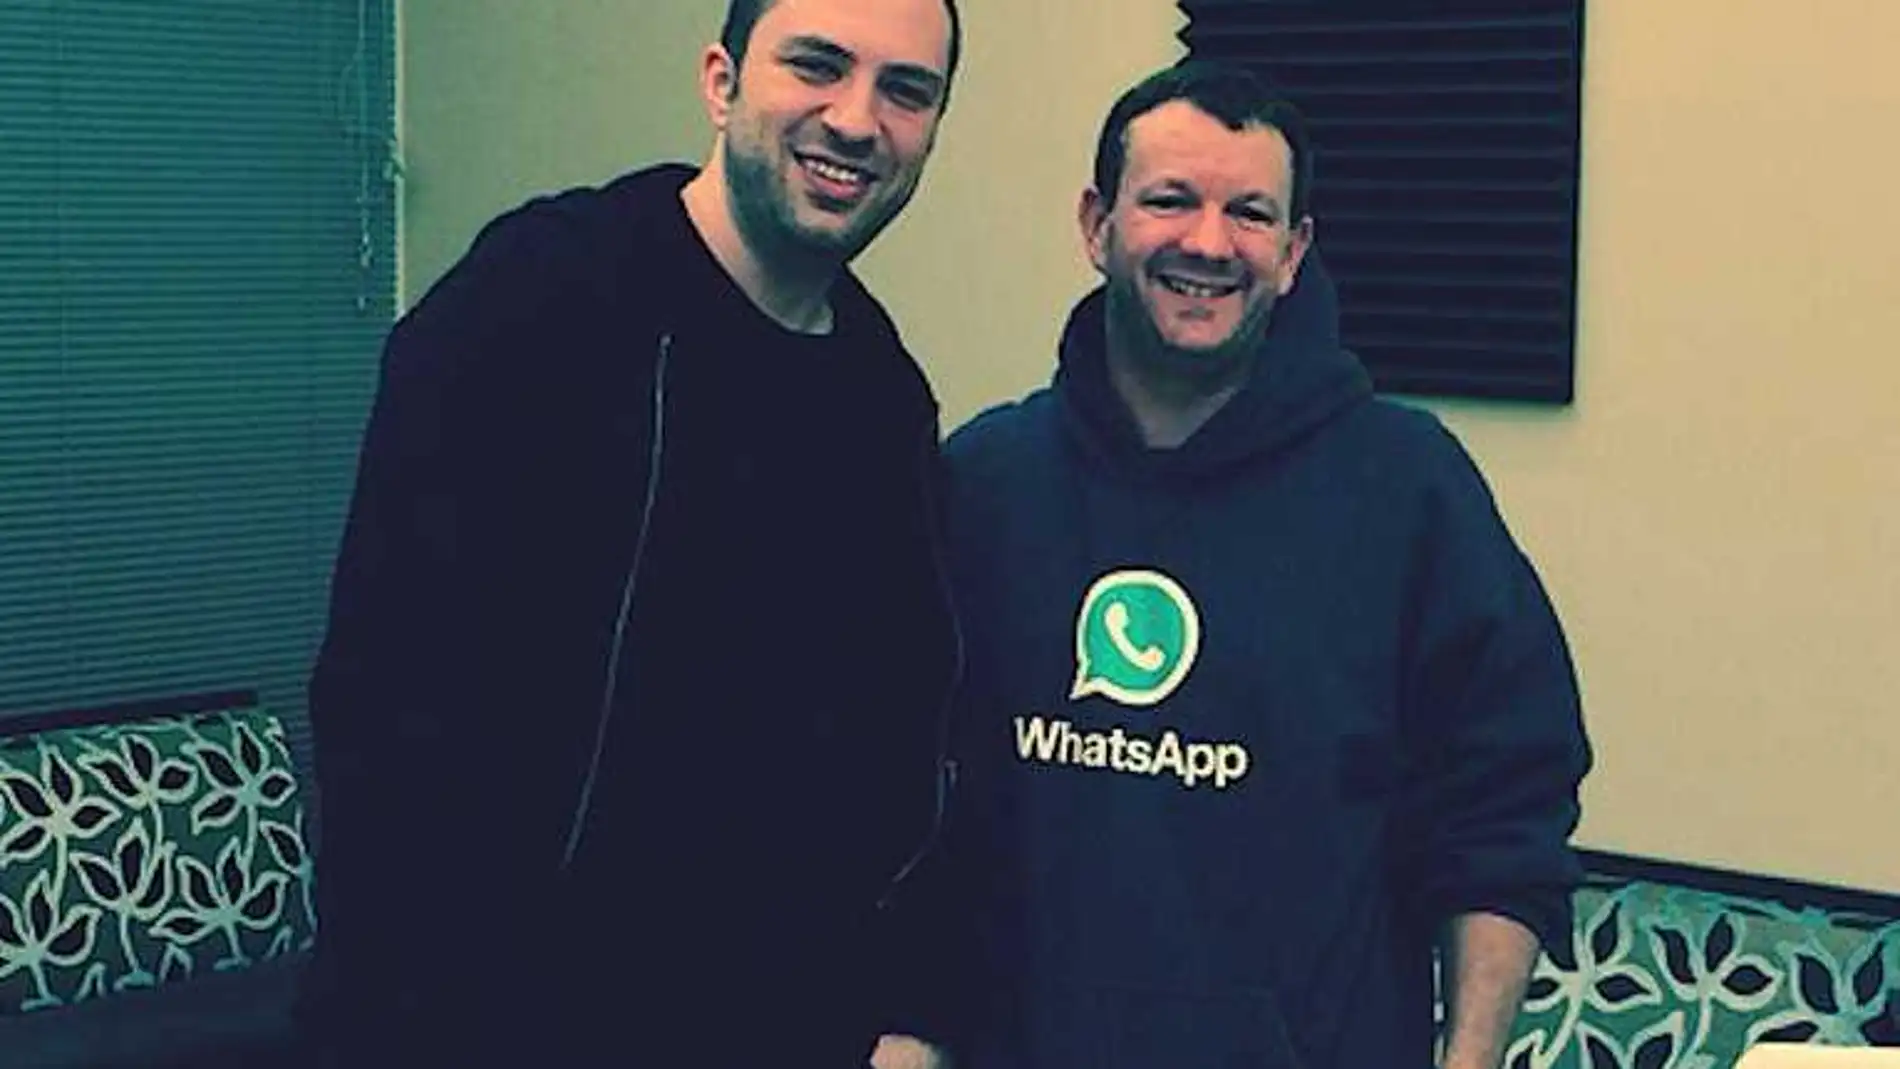 El CEO de WhatsApp, Jan Koum, abandona la compañía